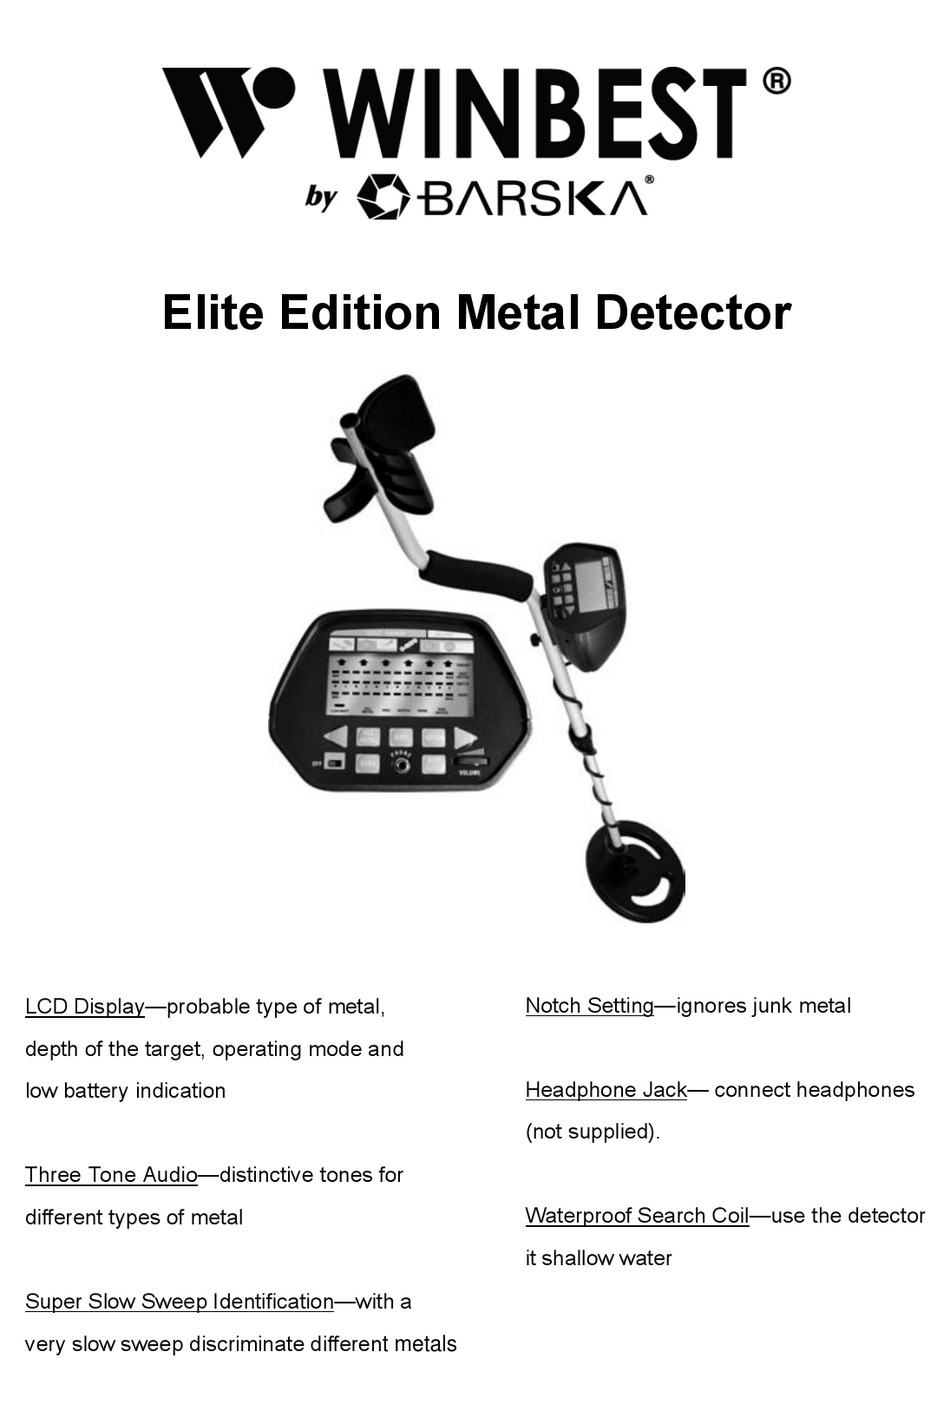 Winbest Elite Edition Metal Detector by BARSKA